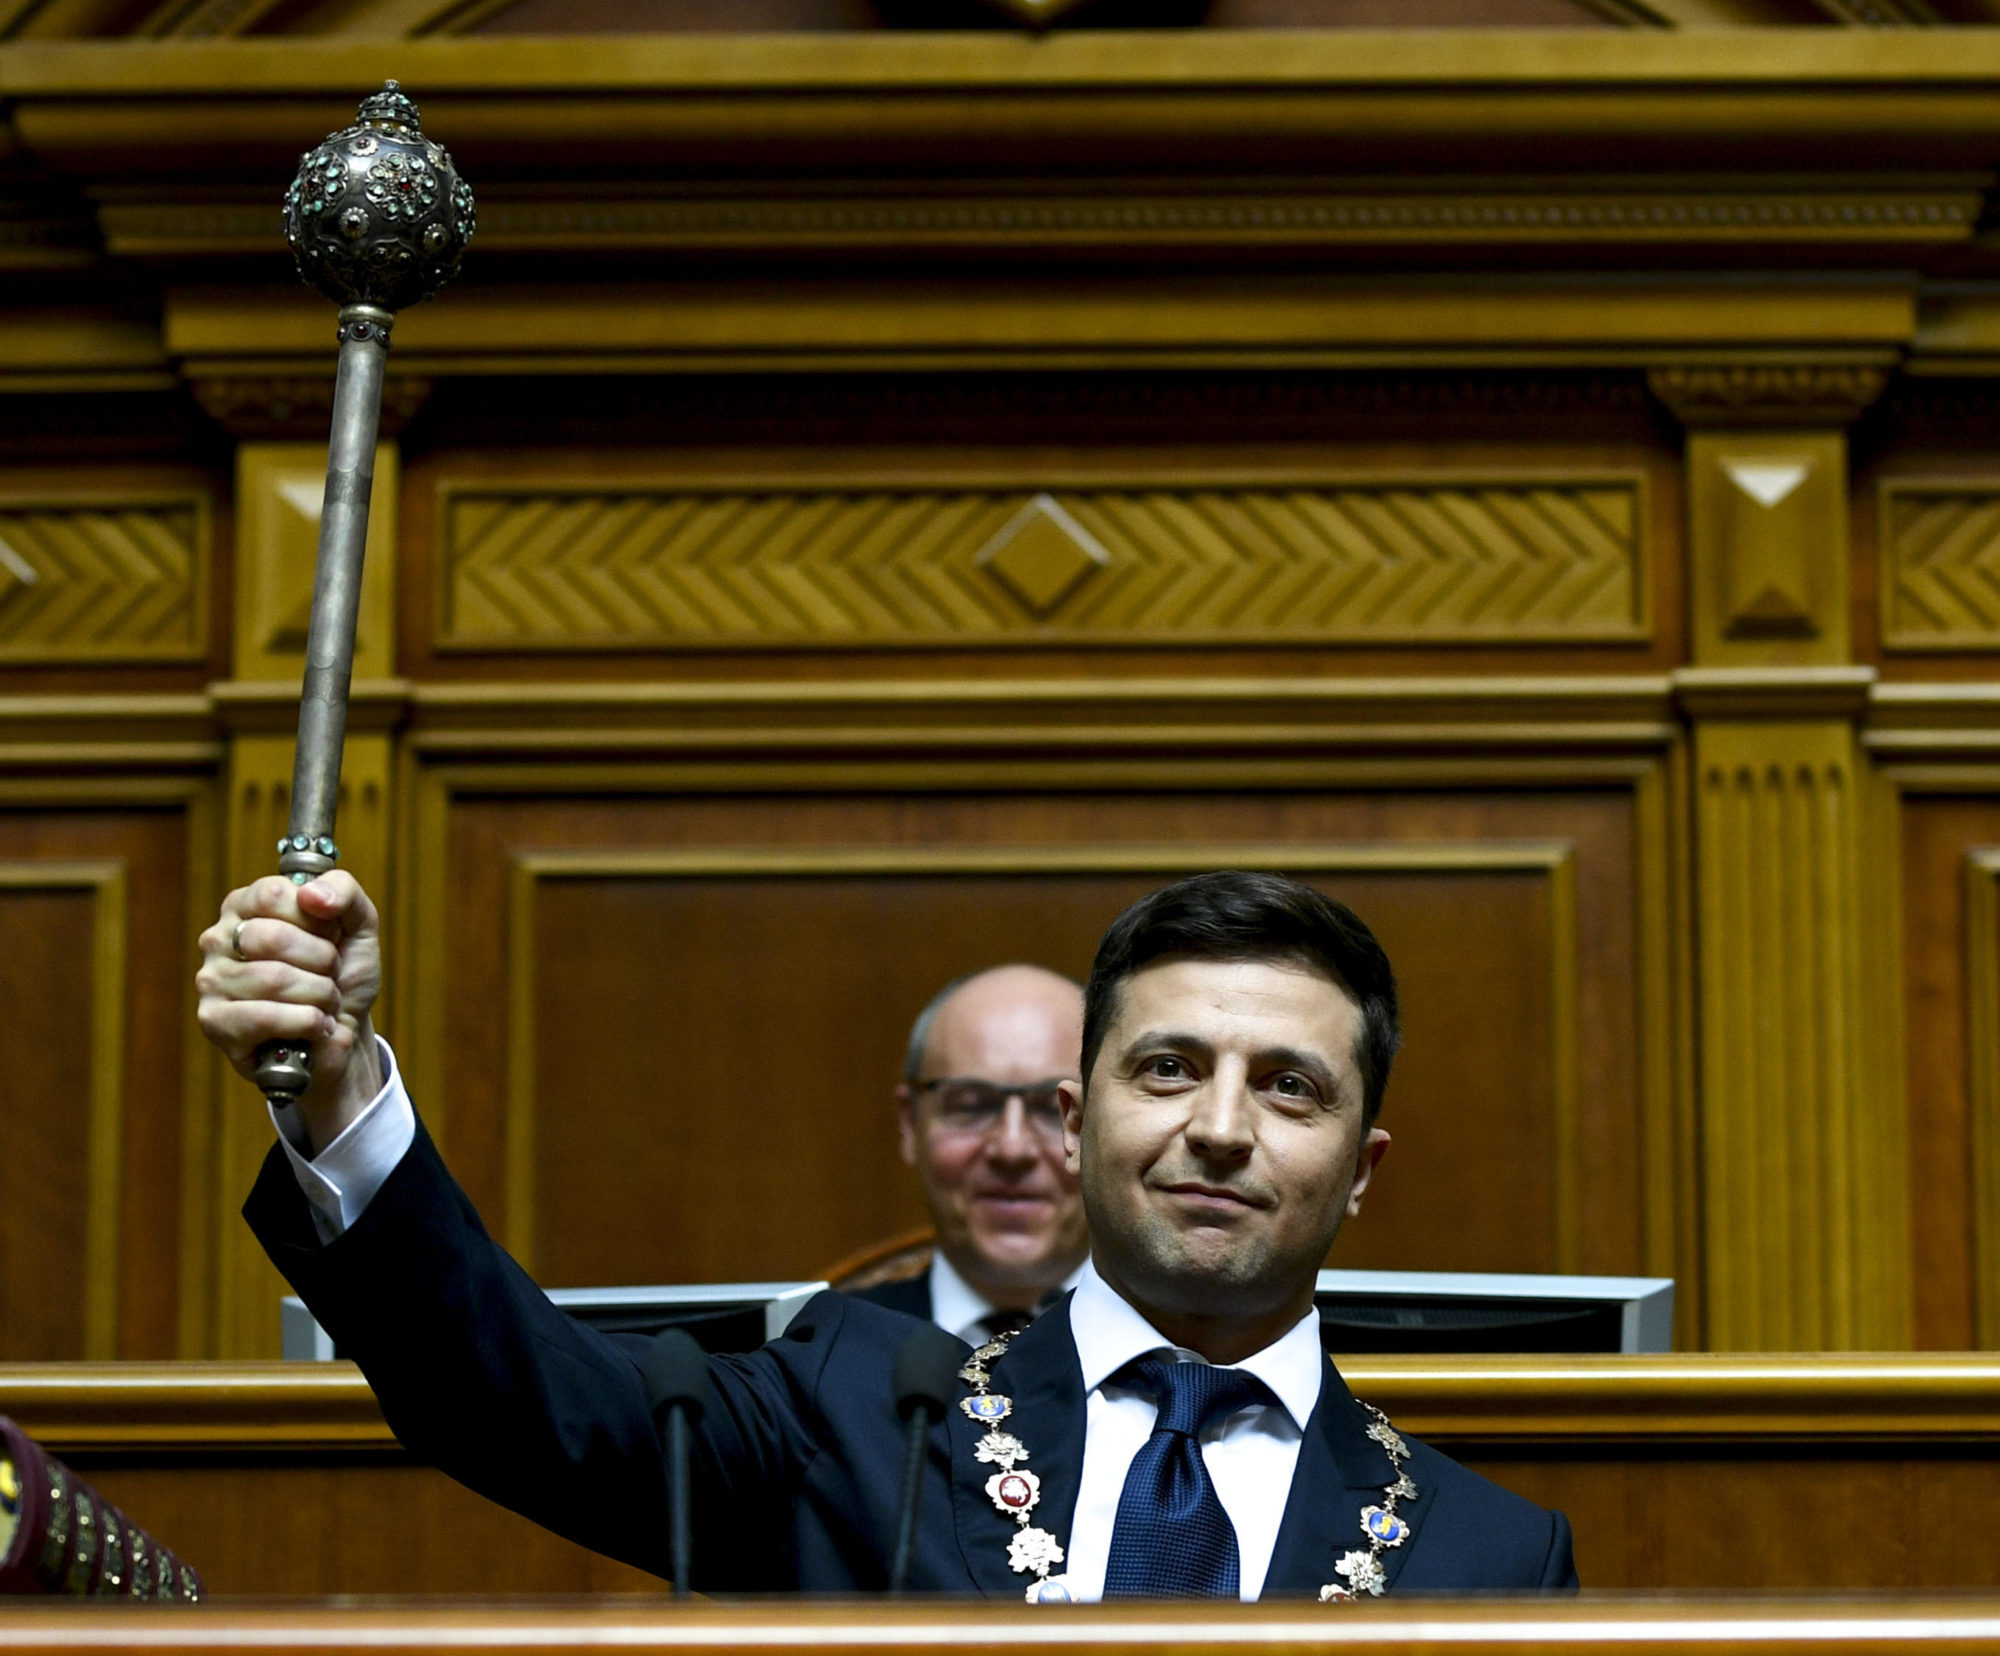 Ukraine Inaugurates First Jewish President